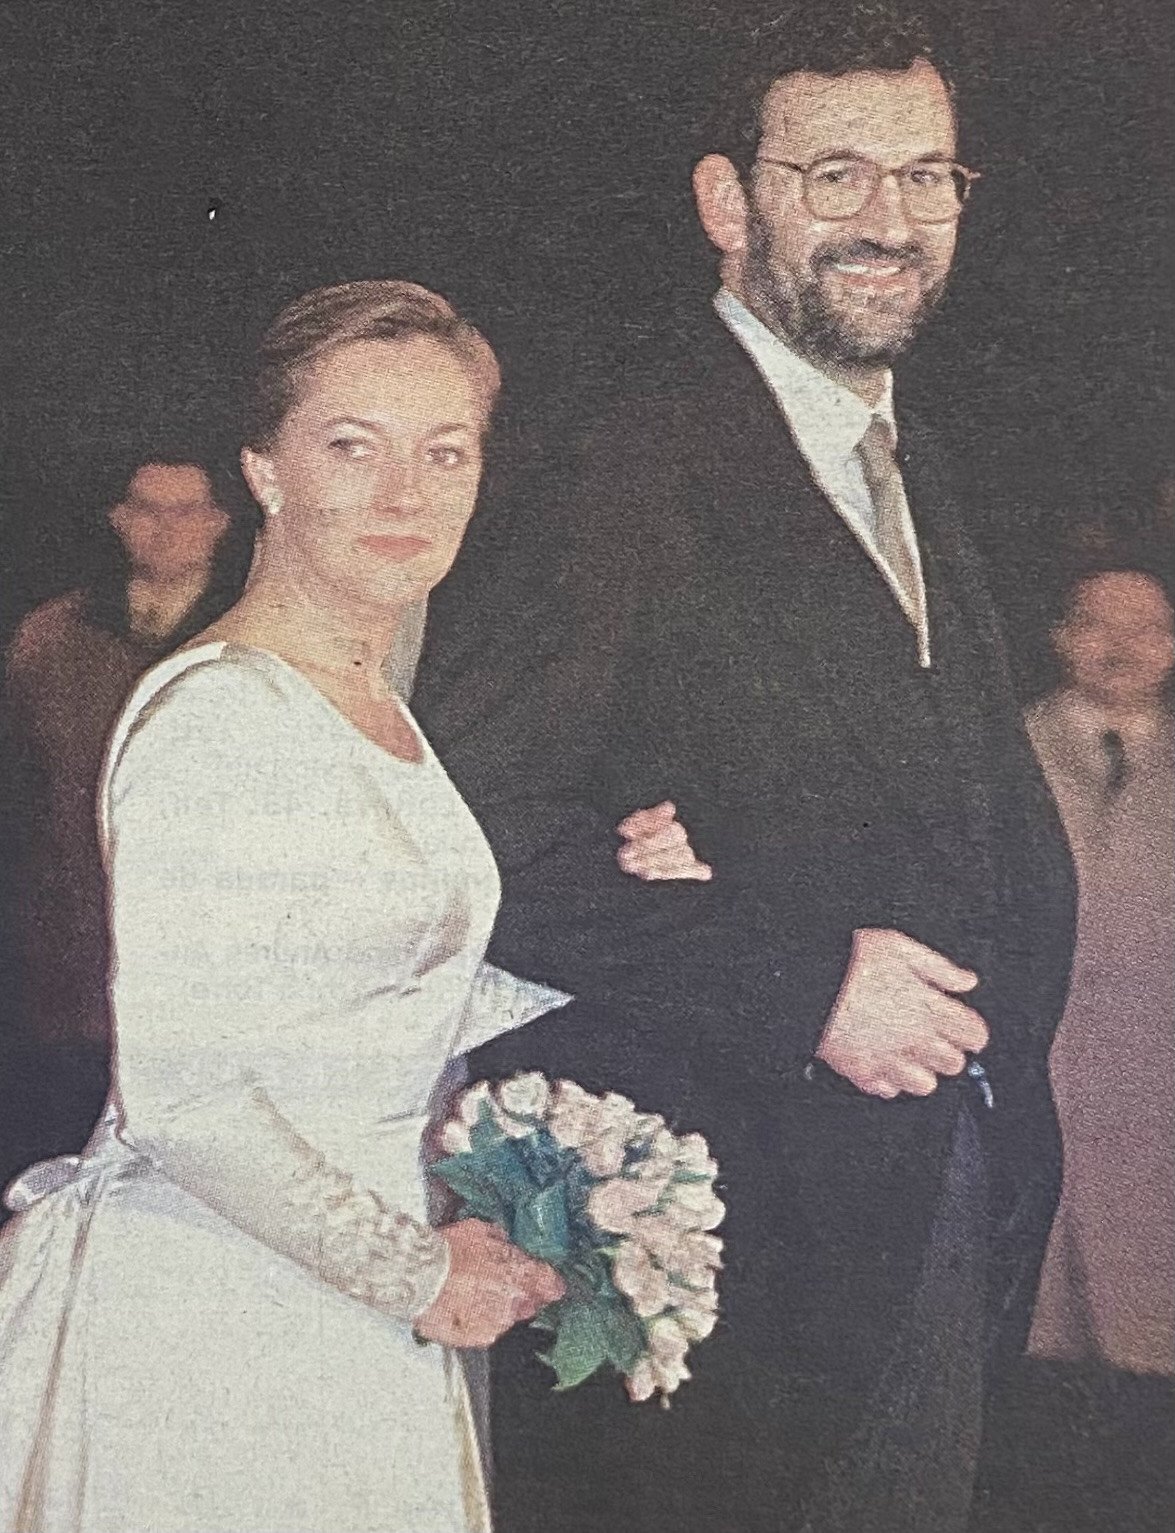 Boda de Mariano Rajoy y Viri en 1996